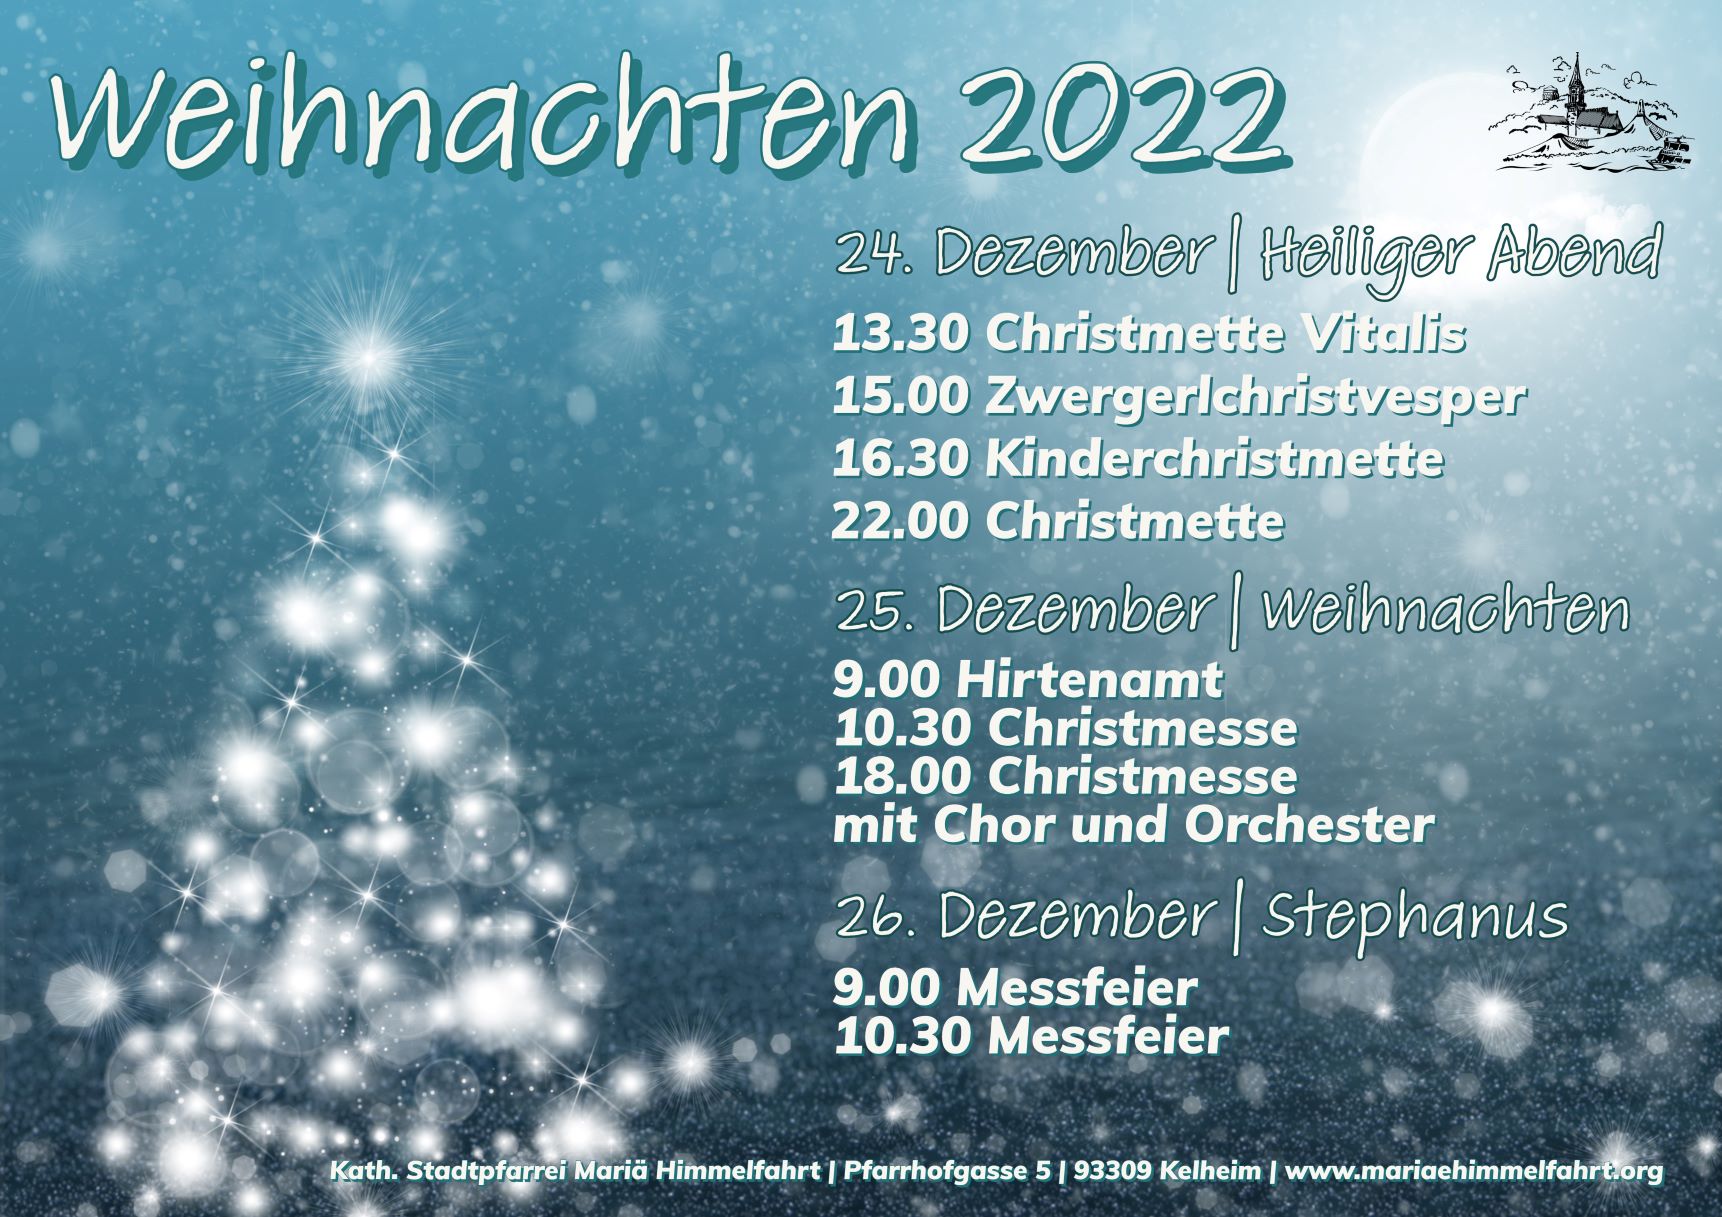 20221224_Weihnachten_quer-1-web.jpg  